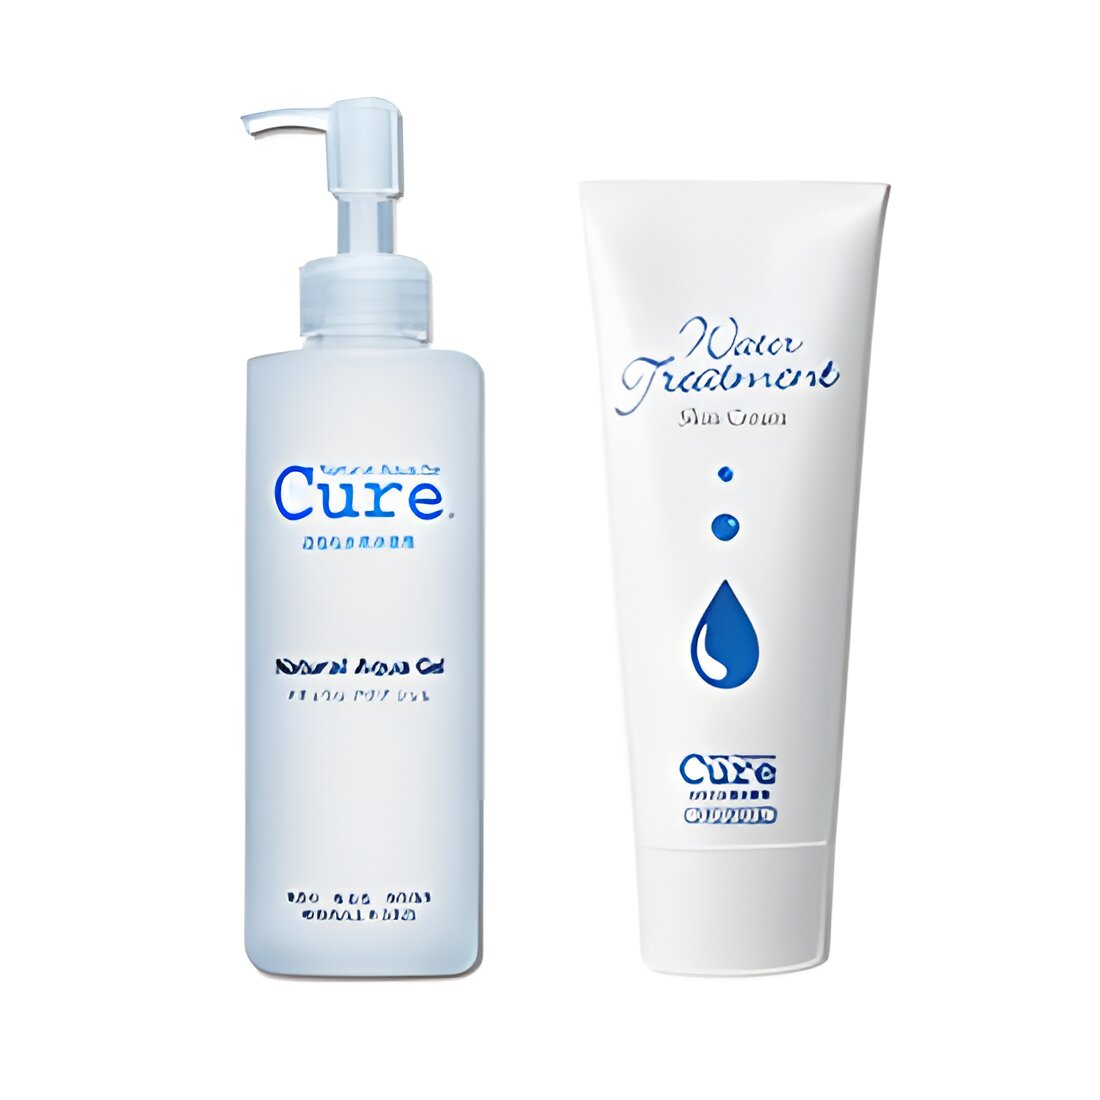 Free Cure Natural Aqua Gel Skincare Sample